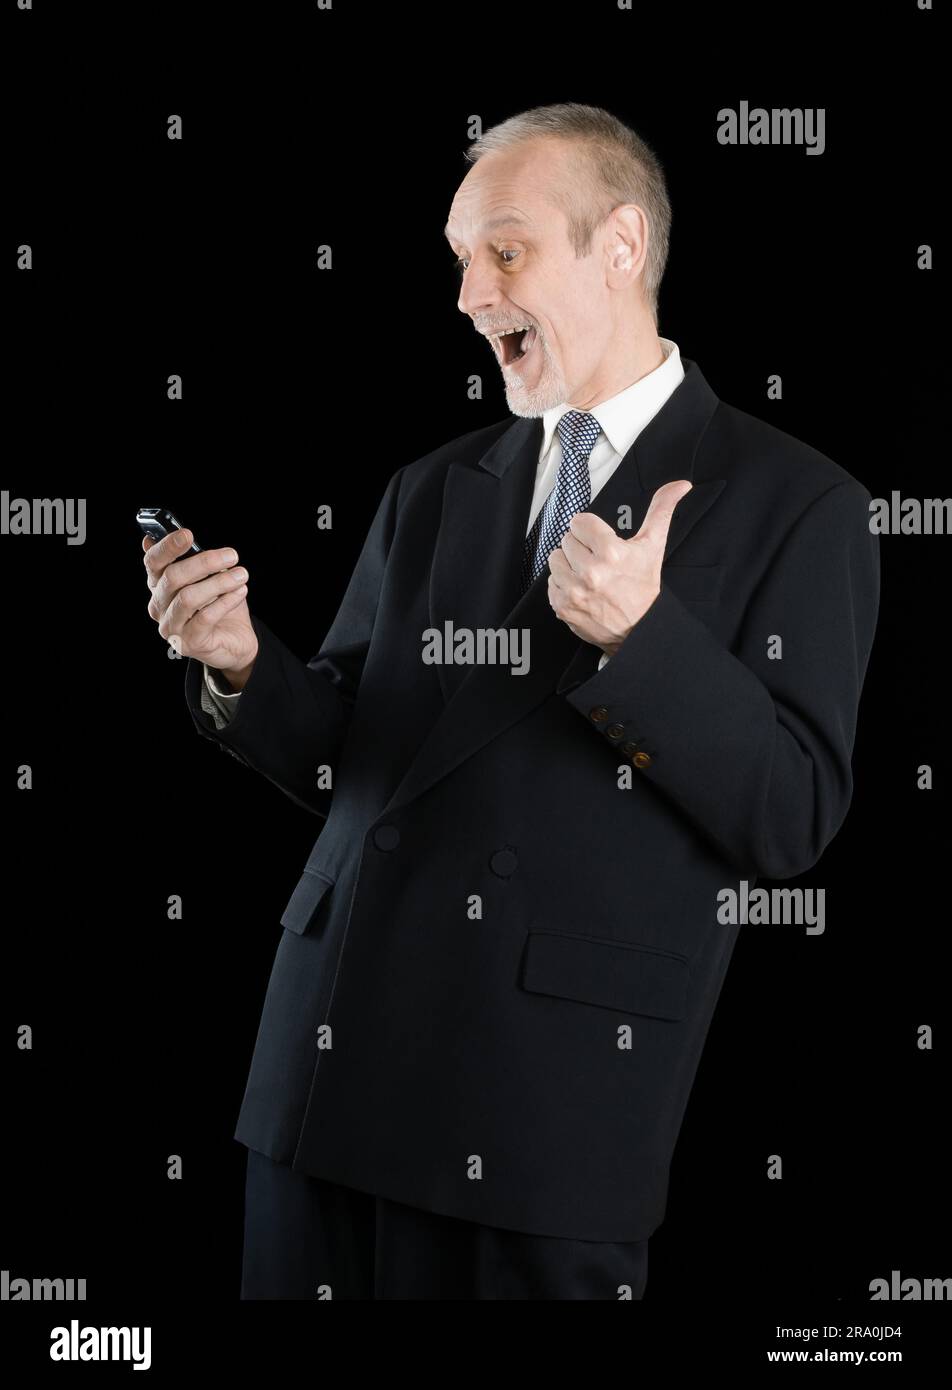 Happy businessman indossando un vestito nero, sorridente e la lettura di sms sul cellulare, con pollice in alto, su sfondo nero Foto Stock